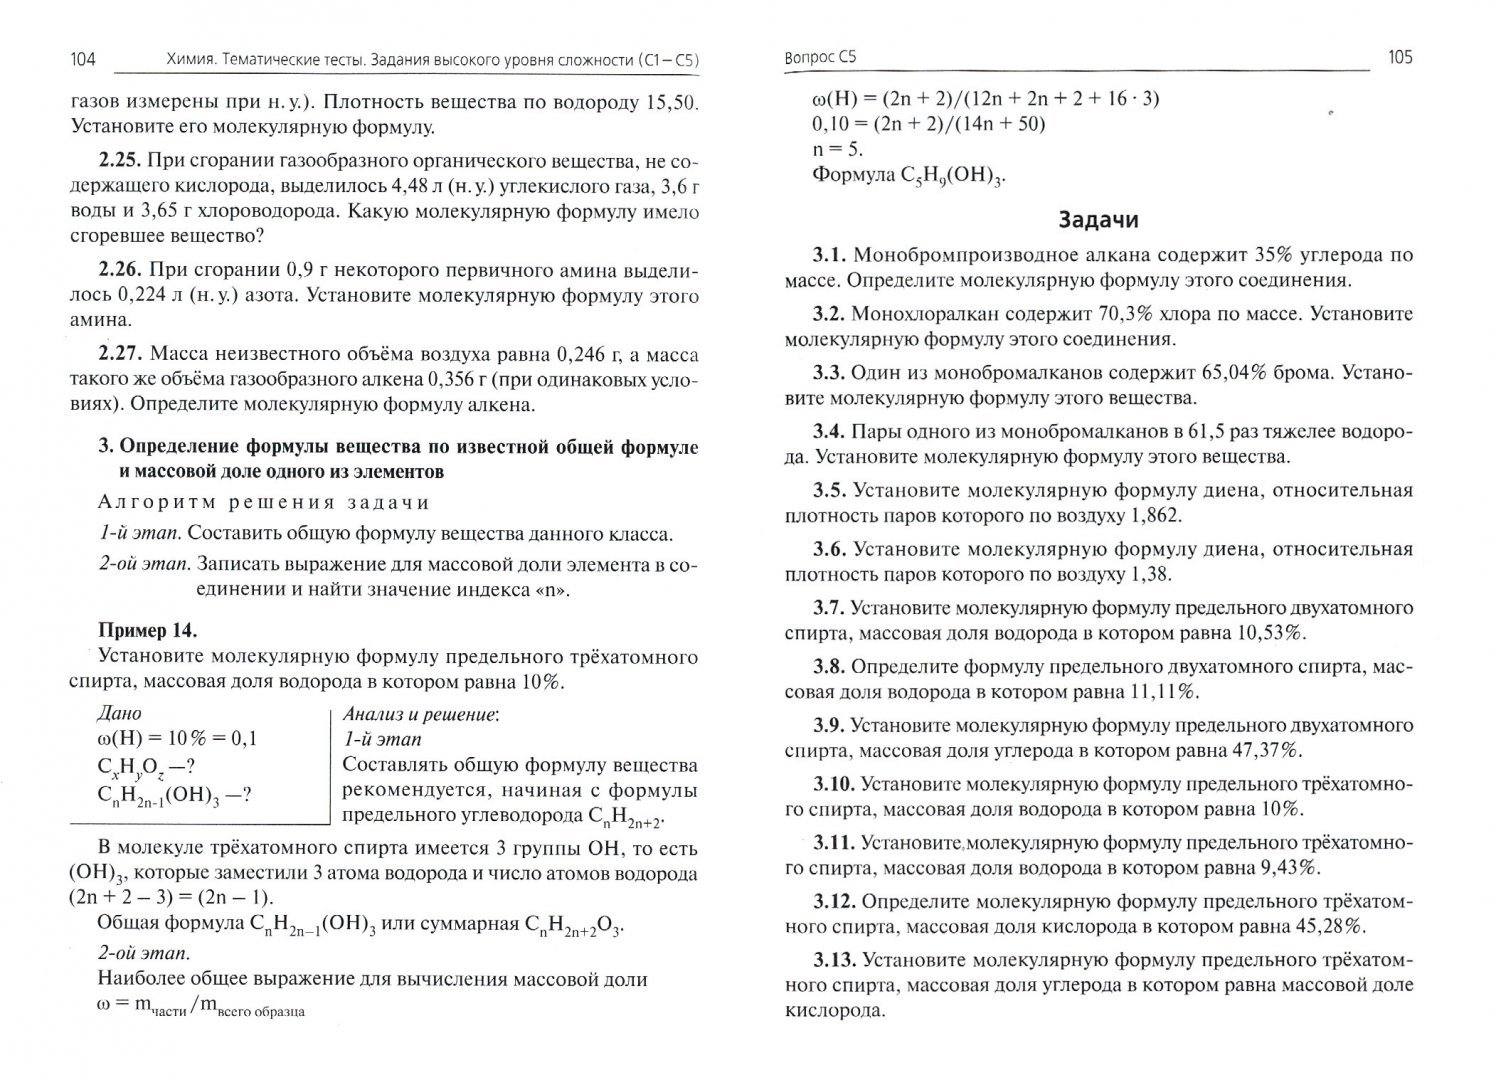 Иллюстрация 1 из 9 для Химия. Задания высокого уровня сложности (часть С) для подготовки к ЕГЭ - Доронькин, Сажнева, Февралева | Лабиринт - книги. Источник: Лабиринт